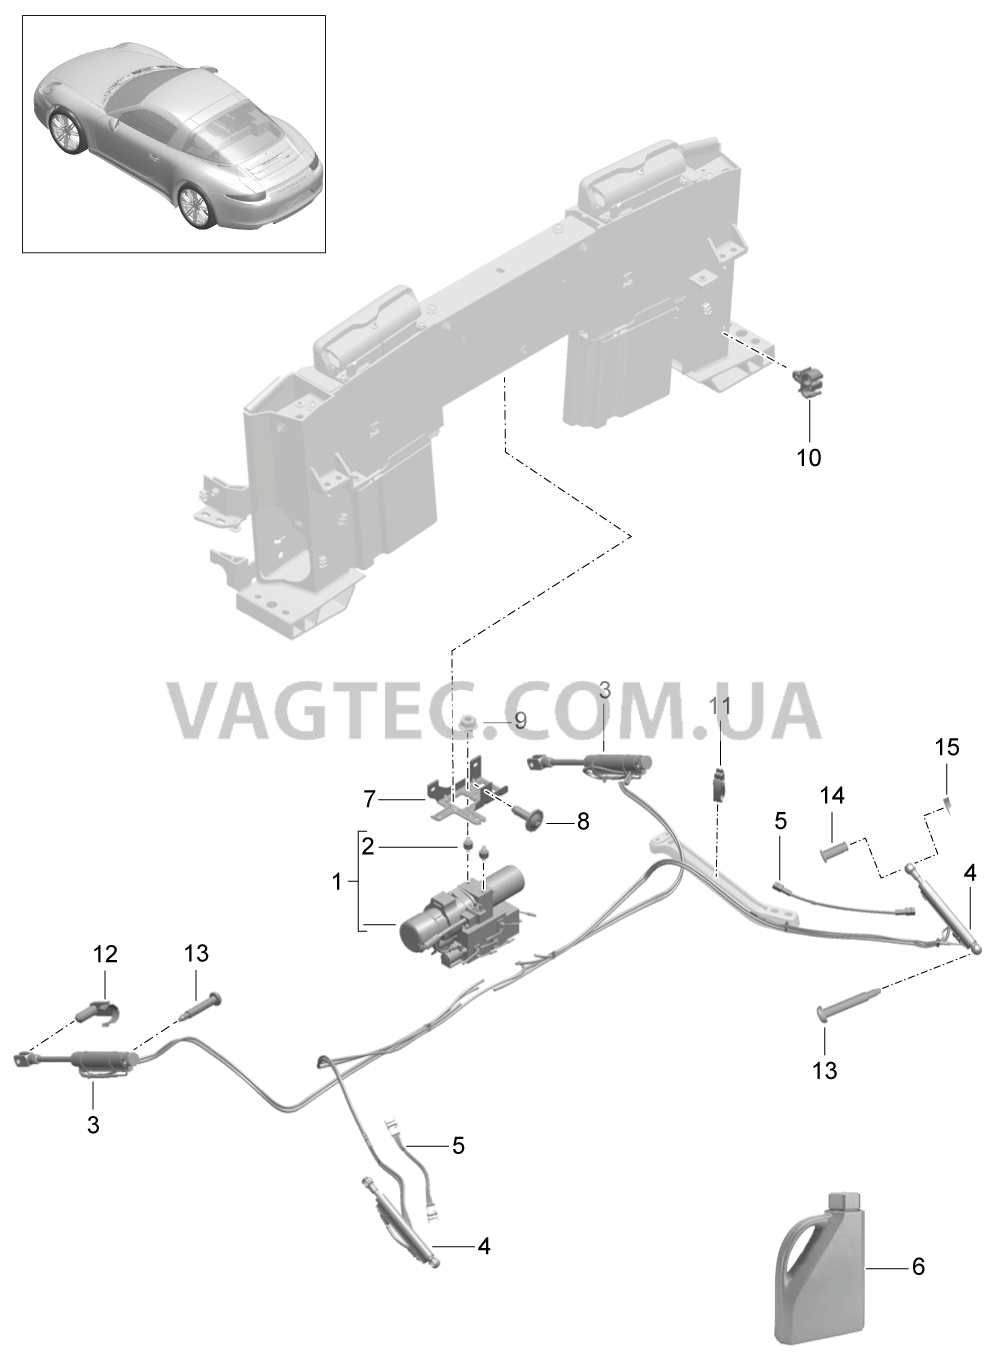 811-057 Складной верх, Привод
						
						TARGA для PORSCHE 911.Carrera 2012-2016